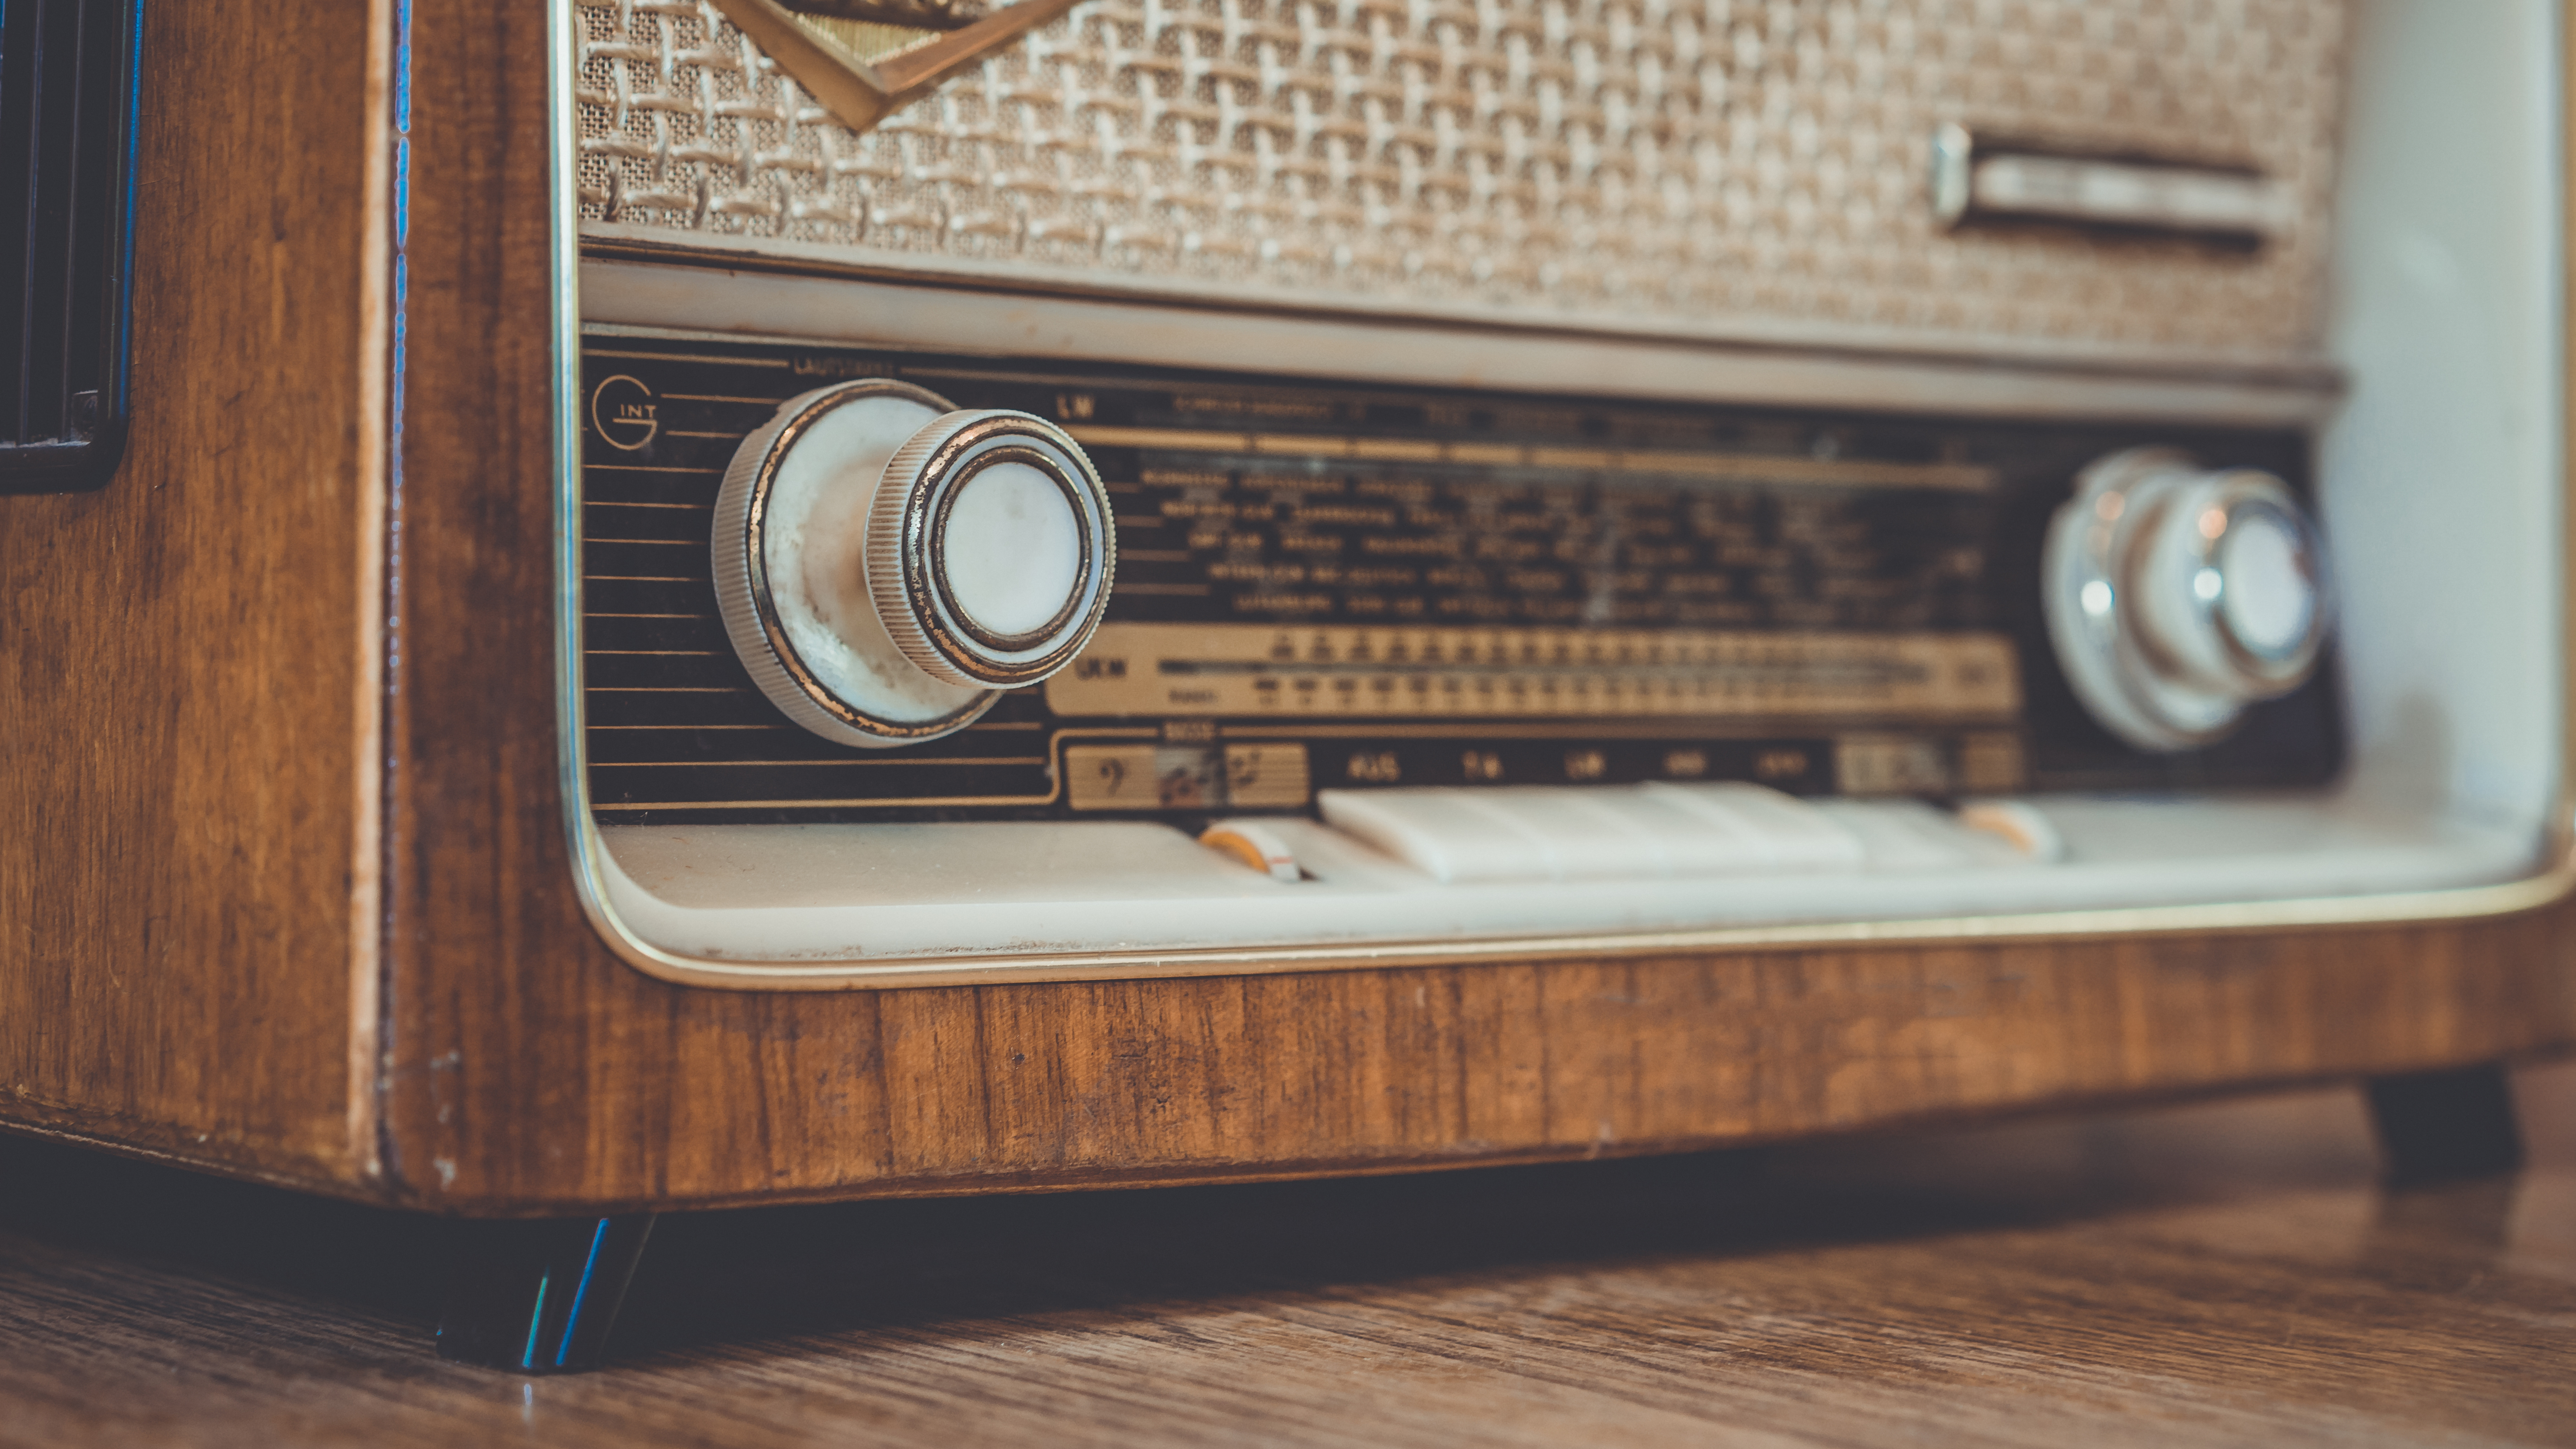 Vintage Radio On Wooden Table.